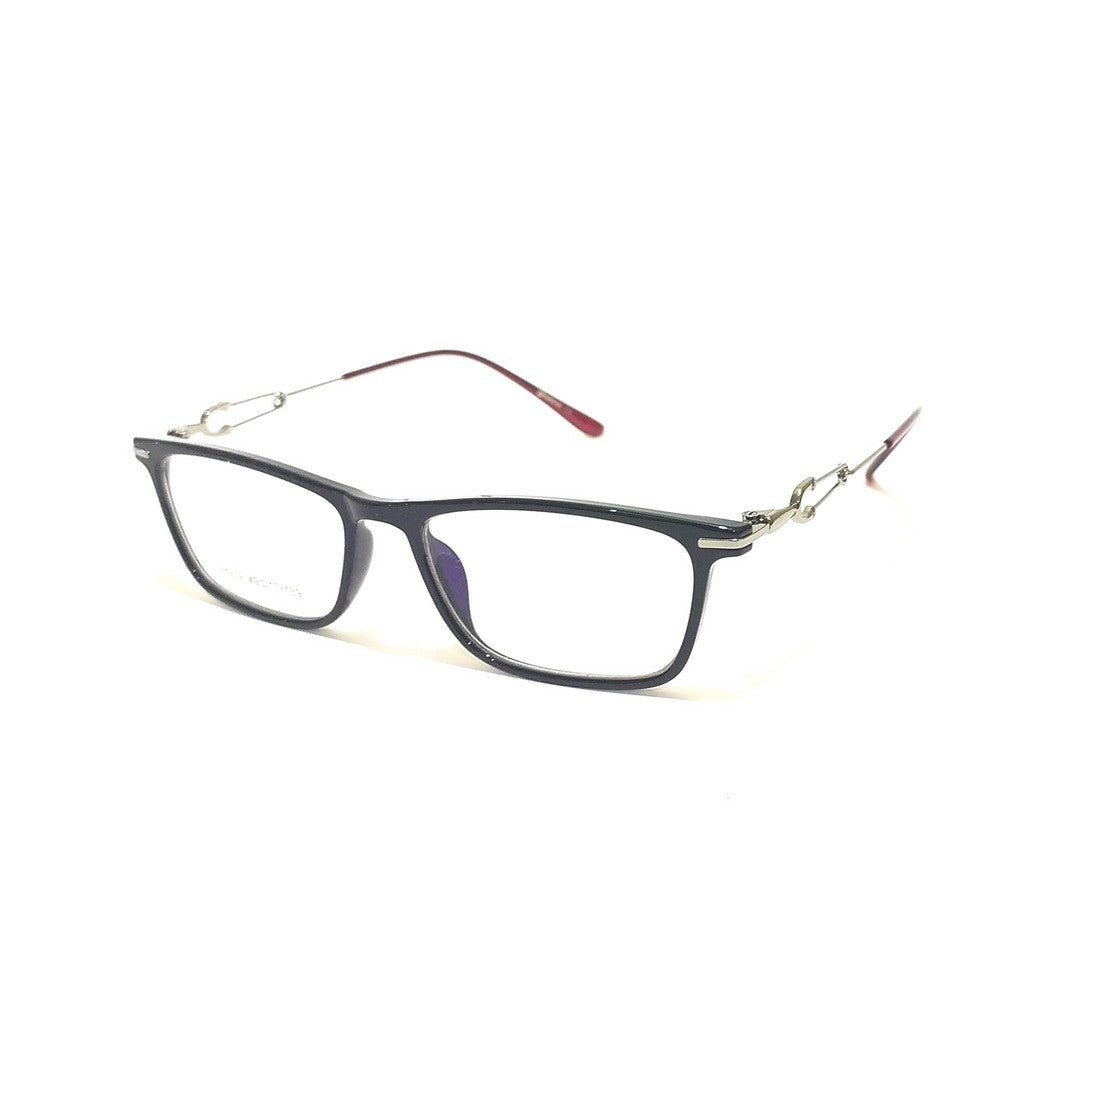 Trendy Designer Glasses for Women 98902C1 - Glasses India Online